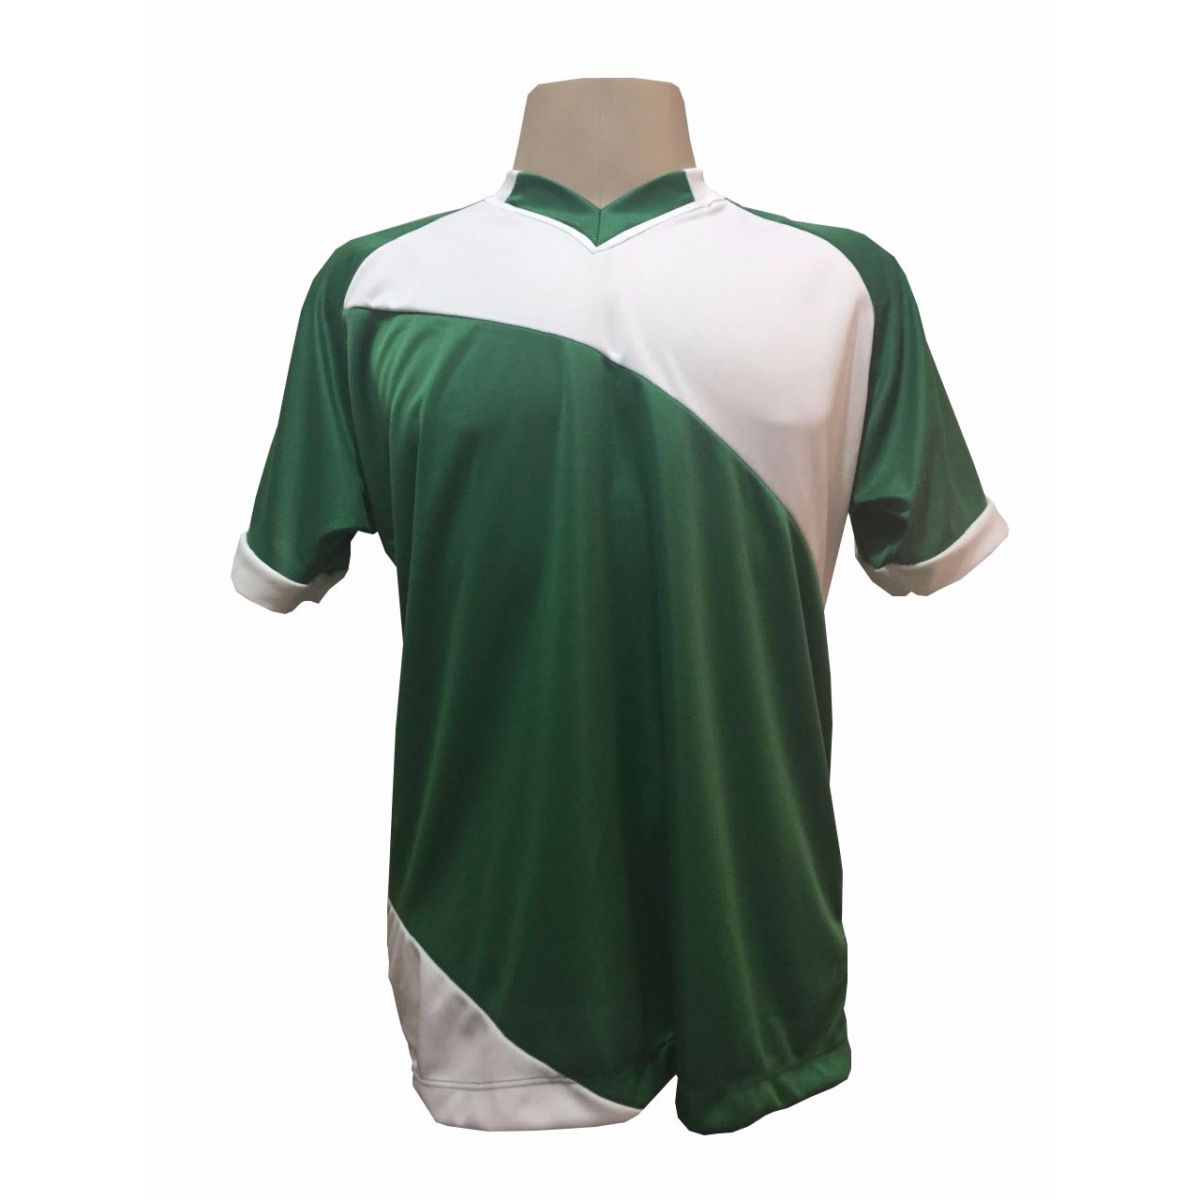 Uniforme Esportivo com 20 camisas modelo Bélgica Verde/Branco + 20 calções modelo Copa Verde/Branco + Brindes